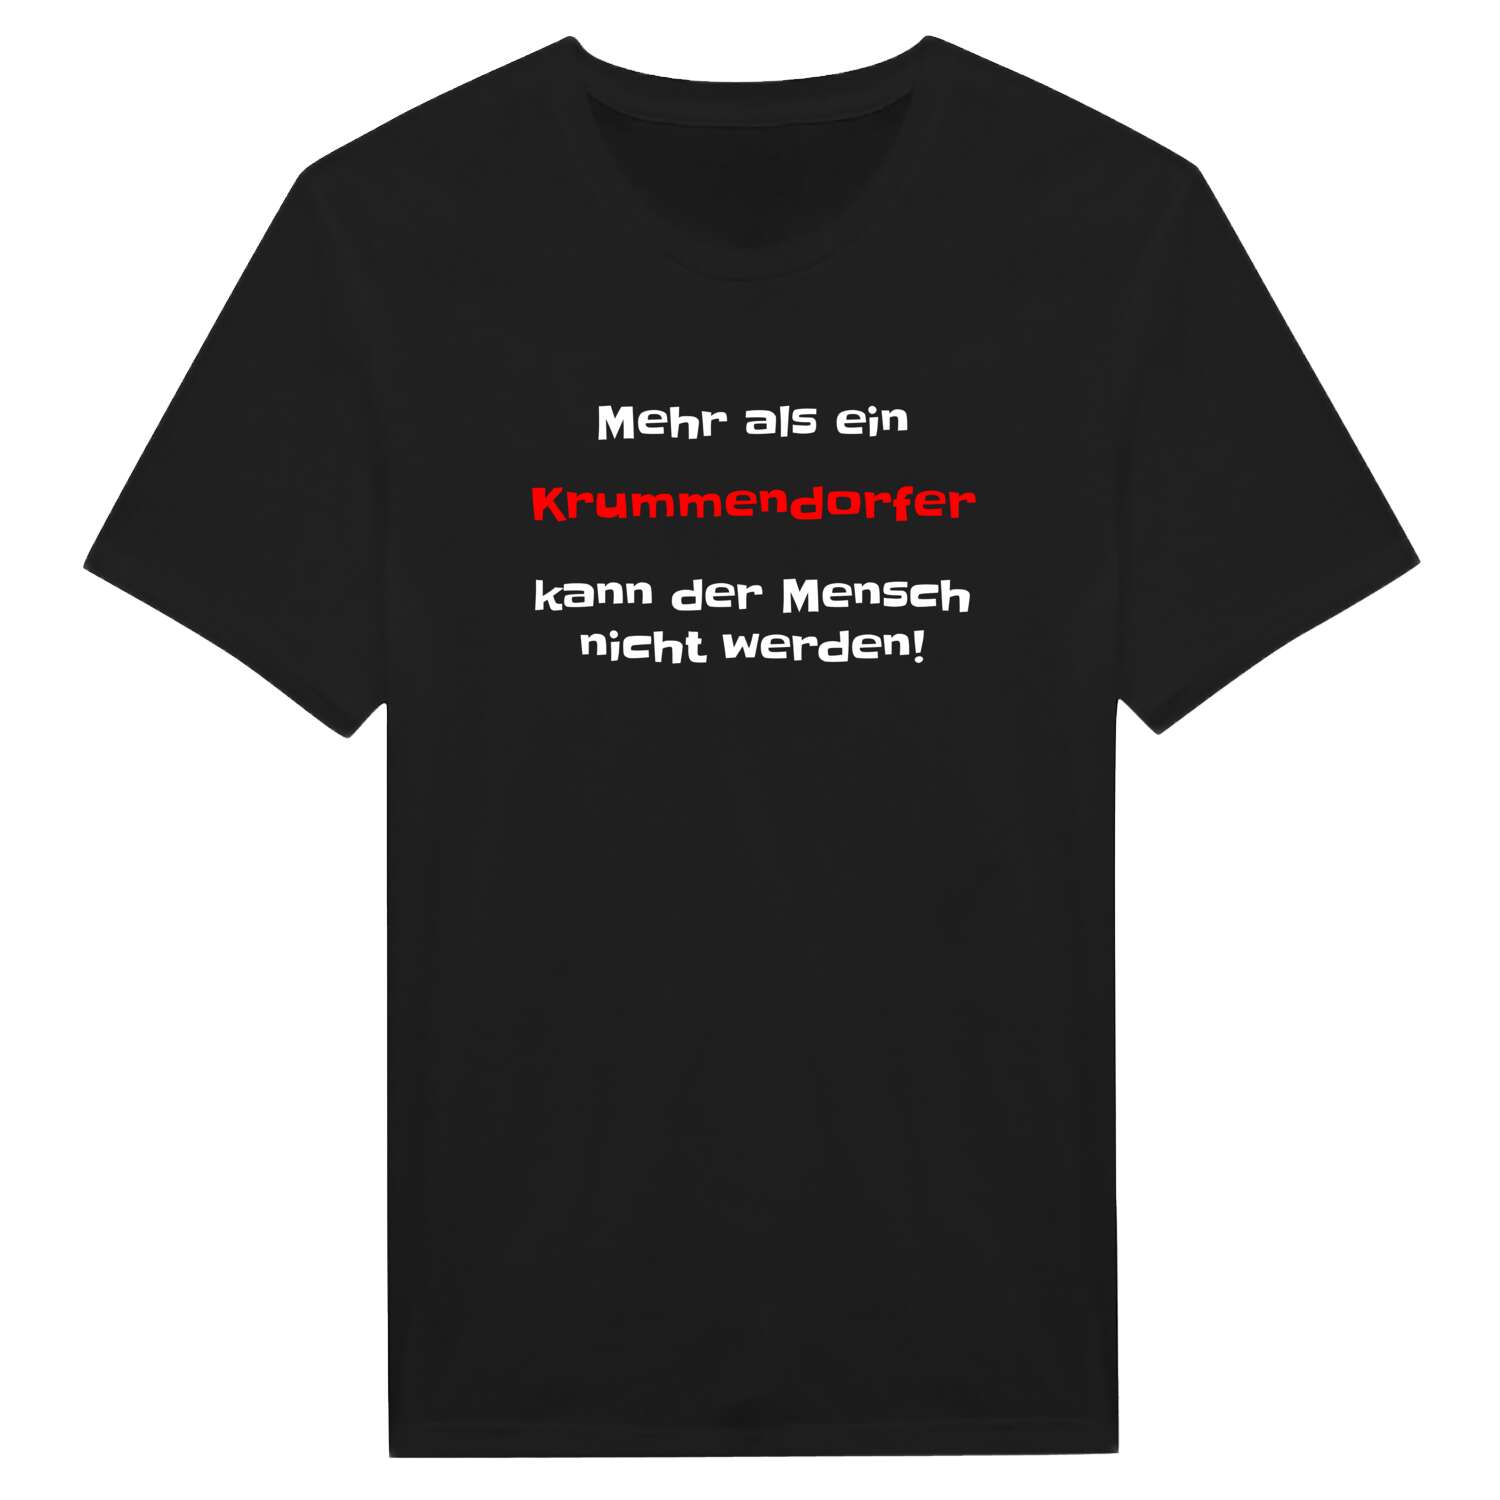 Krummendorf T-Shirt »Mehr als ein«